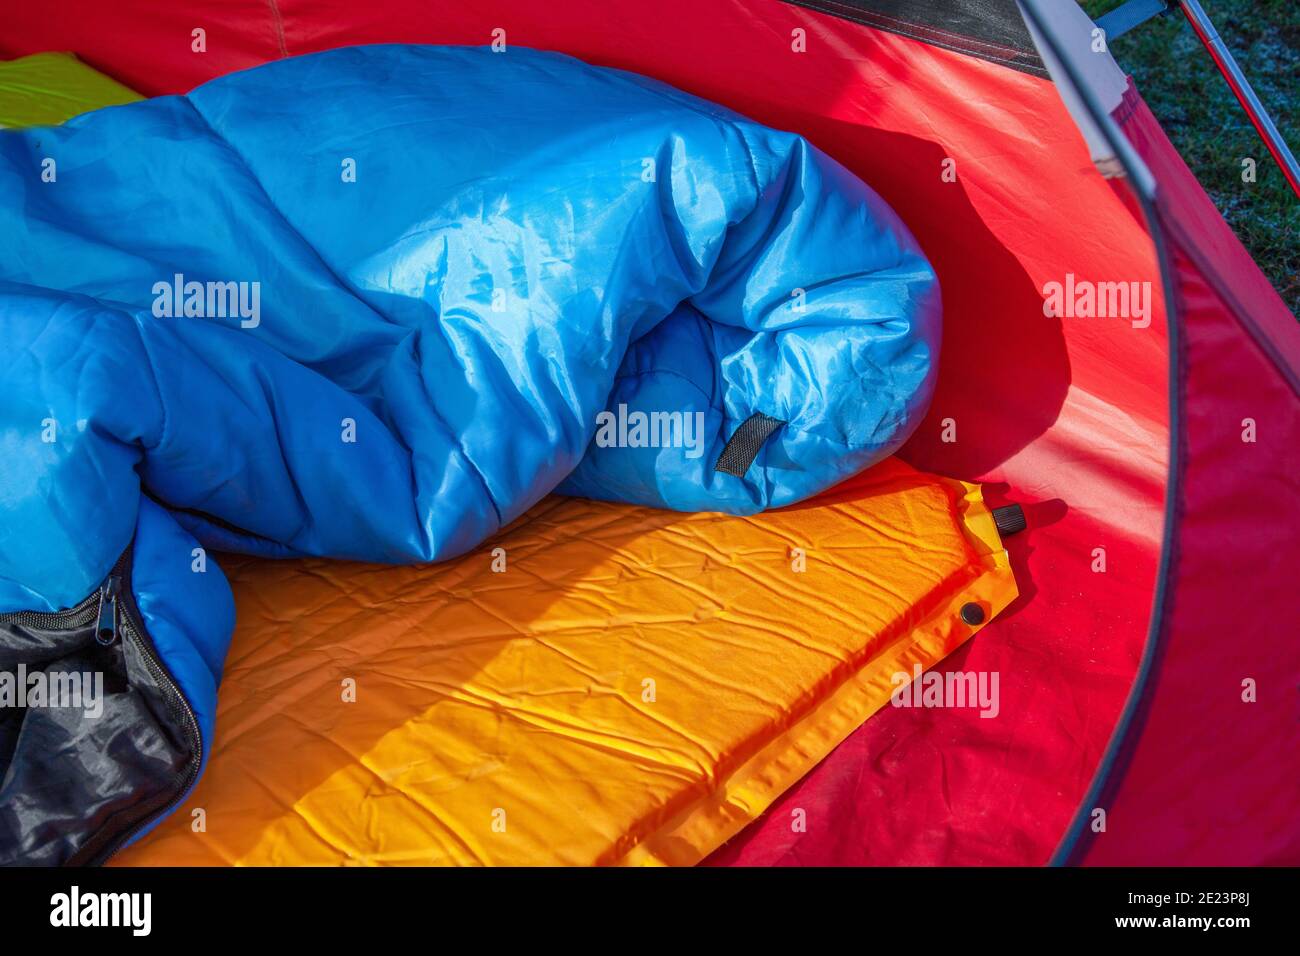 Das Innere eines roten Zeltes mit einem blauen Schlaf Tasche und eine orange selbstaufblasende Blow-up Matratzenauflage für unter Sein Schlafsack Stockfoto